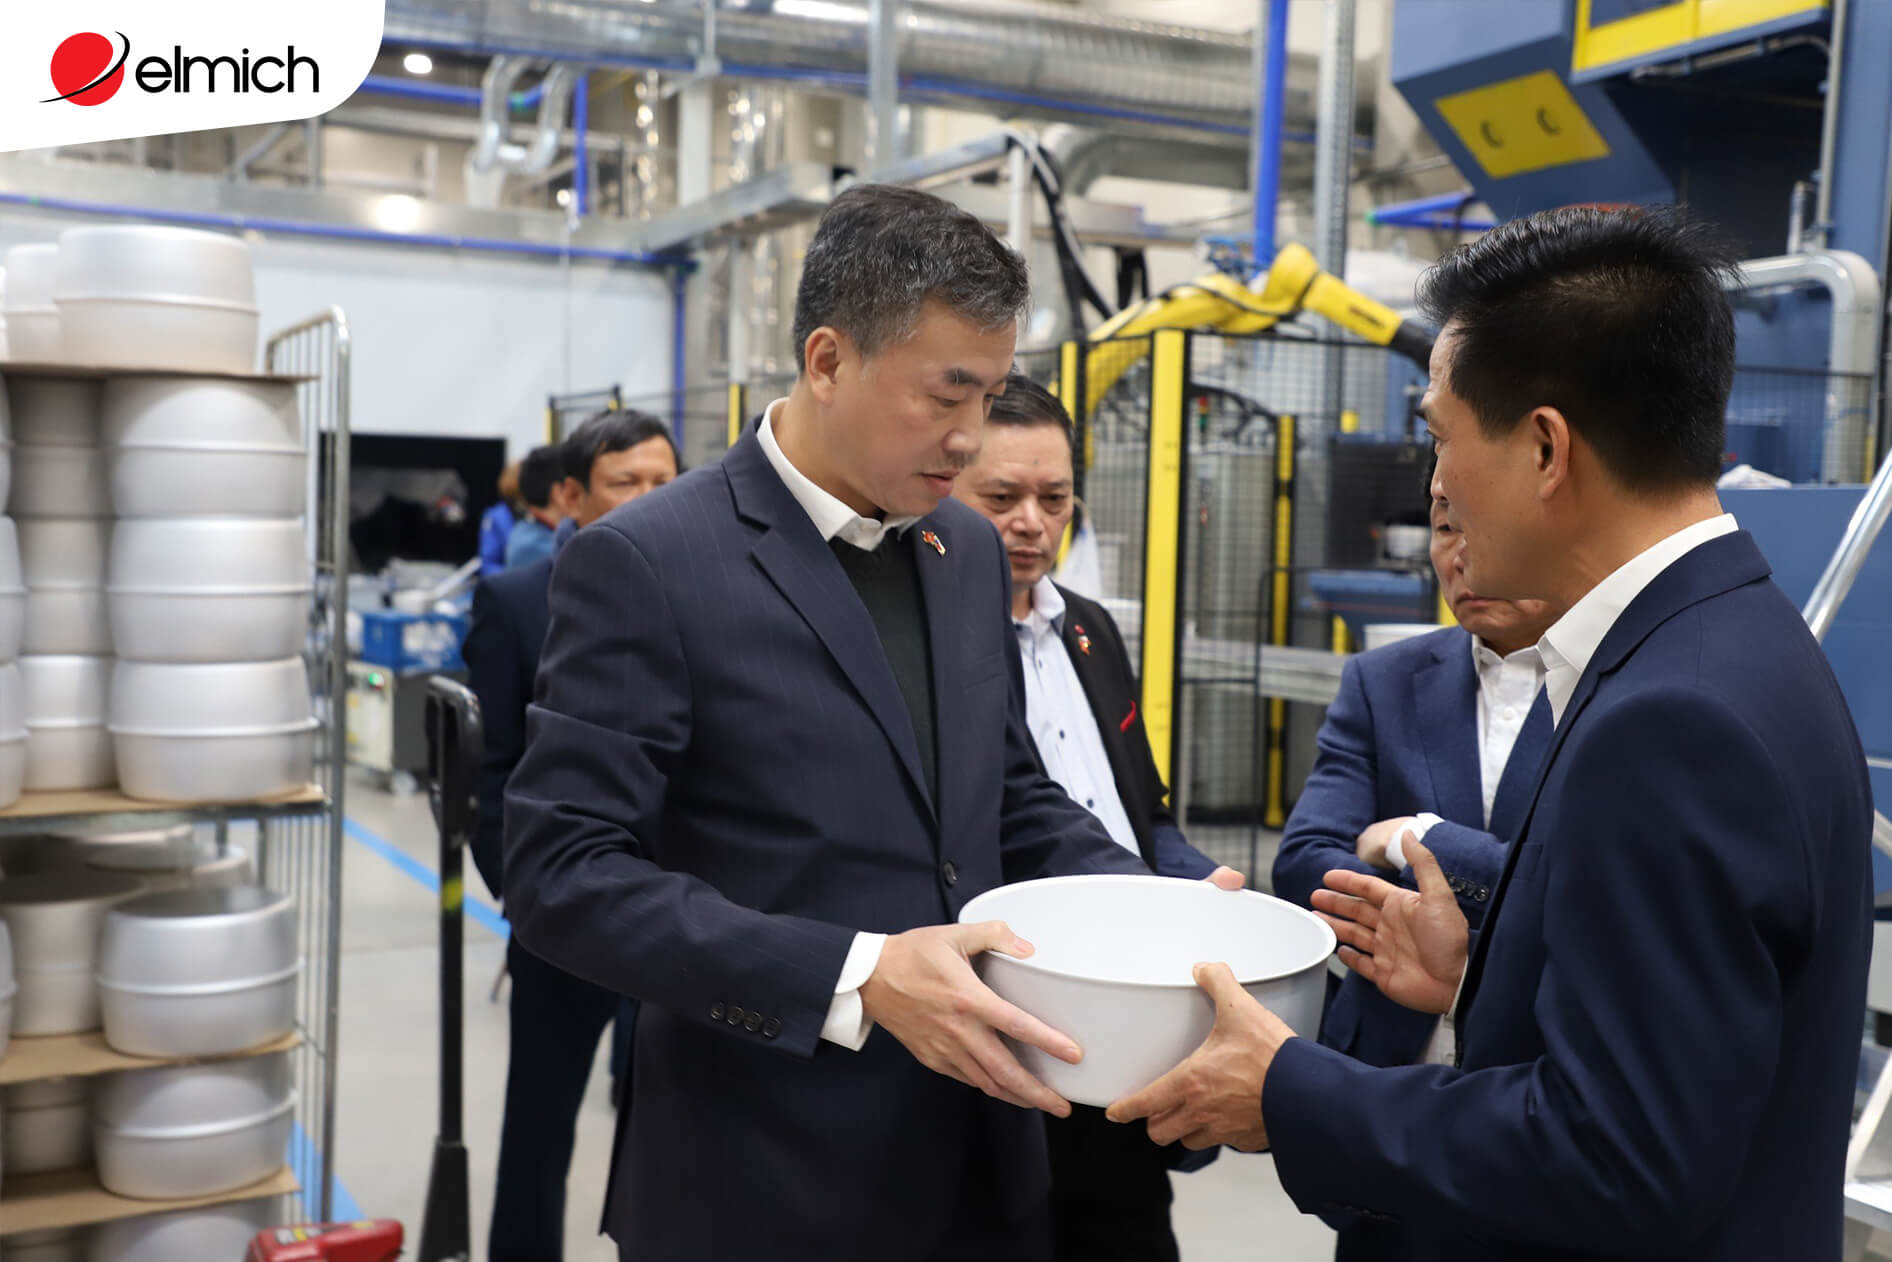 Đại sứ Dương Hoài Nam và ông Đỗ Thành Trung - Chủ tịch Tập đoàn Elmich trải nghiệm sản phẩm gia dụng thông minh chuẩn Châu Âu của tập đoàn Elmich